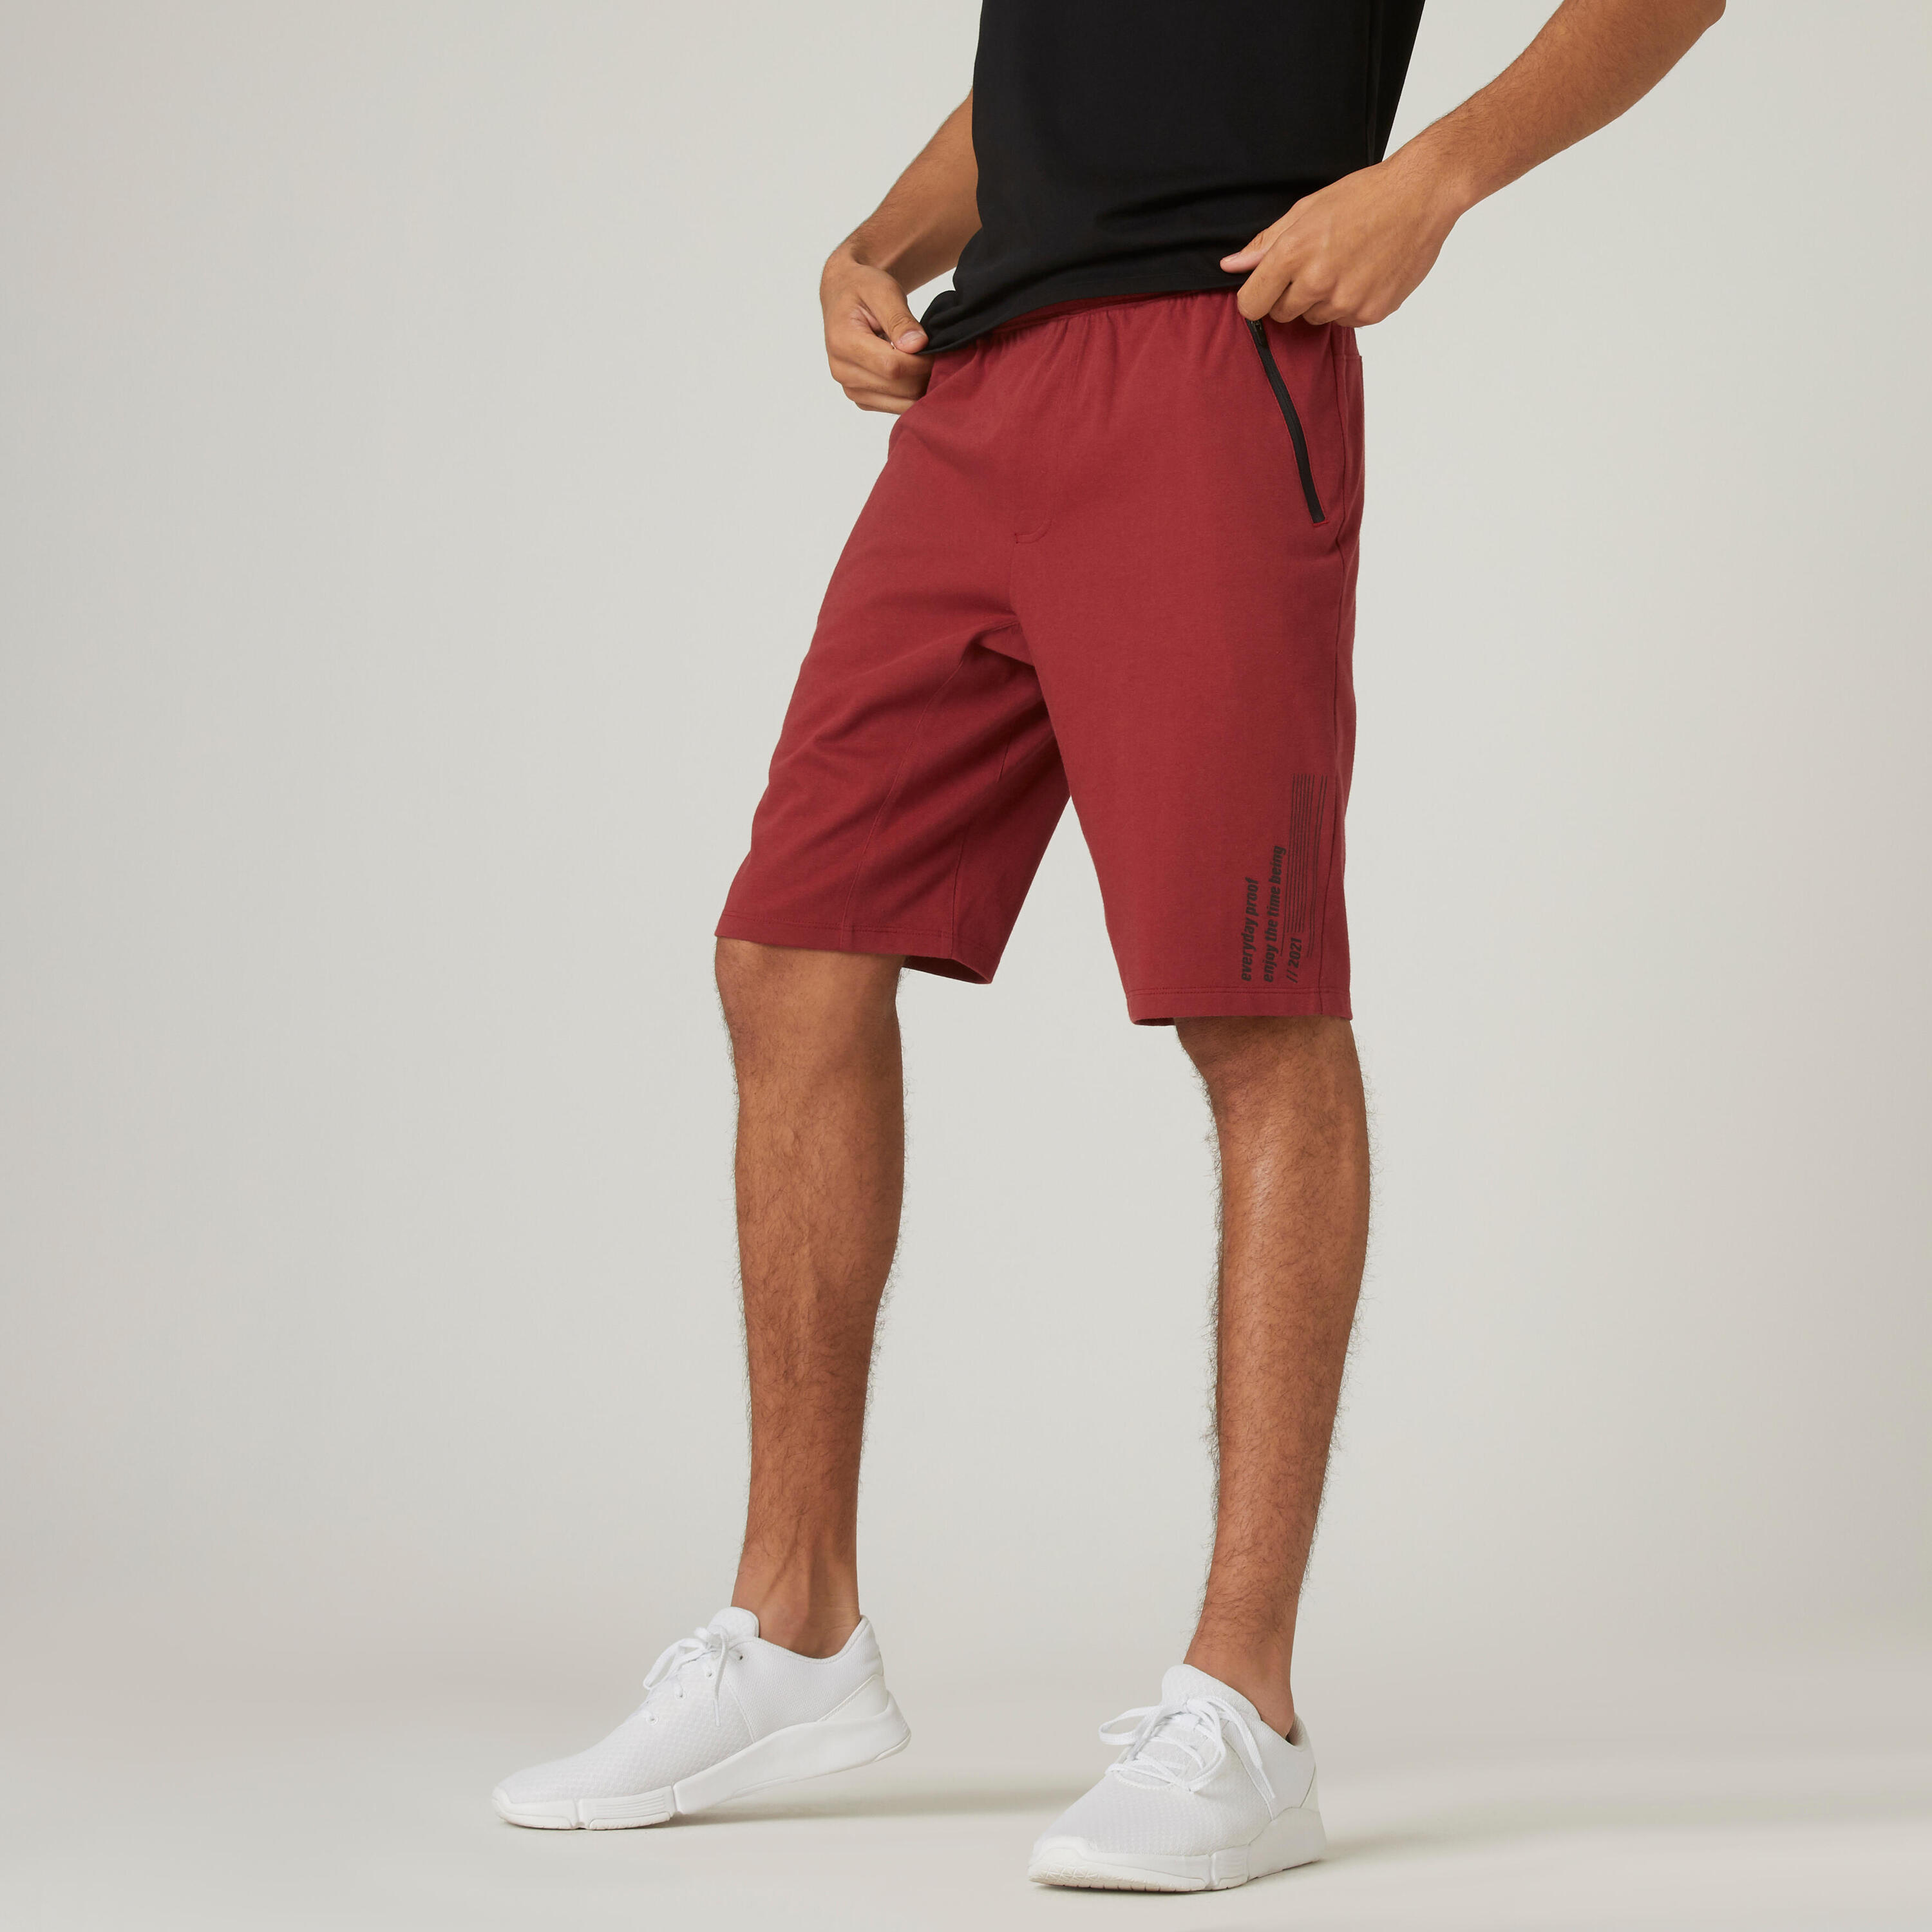 NYAMBA Men's Cotton Blend Shorts - Red